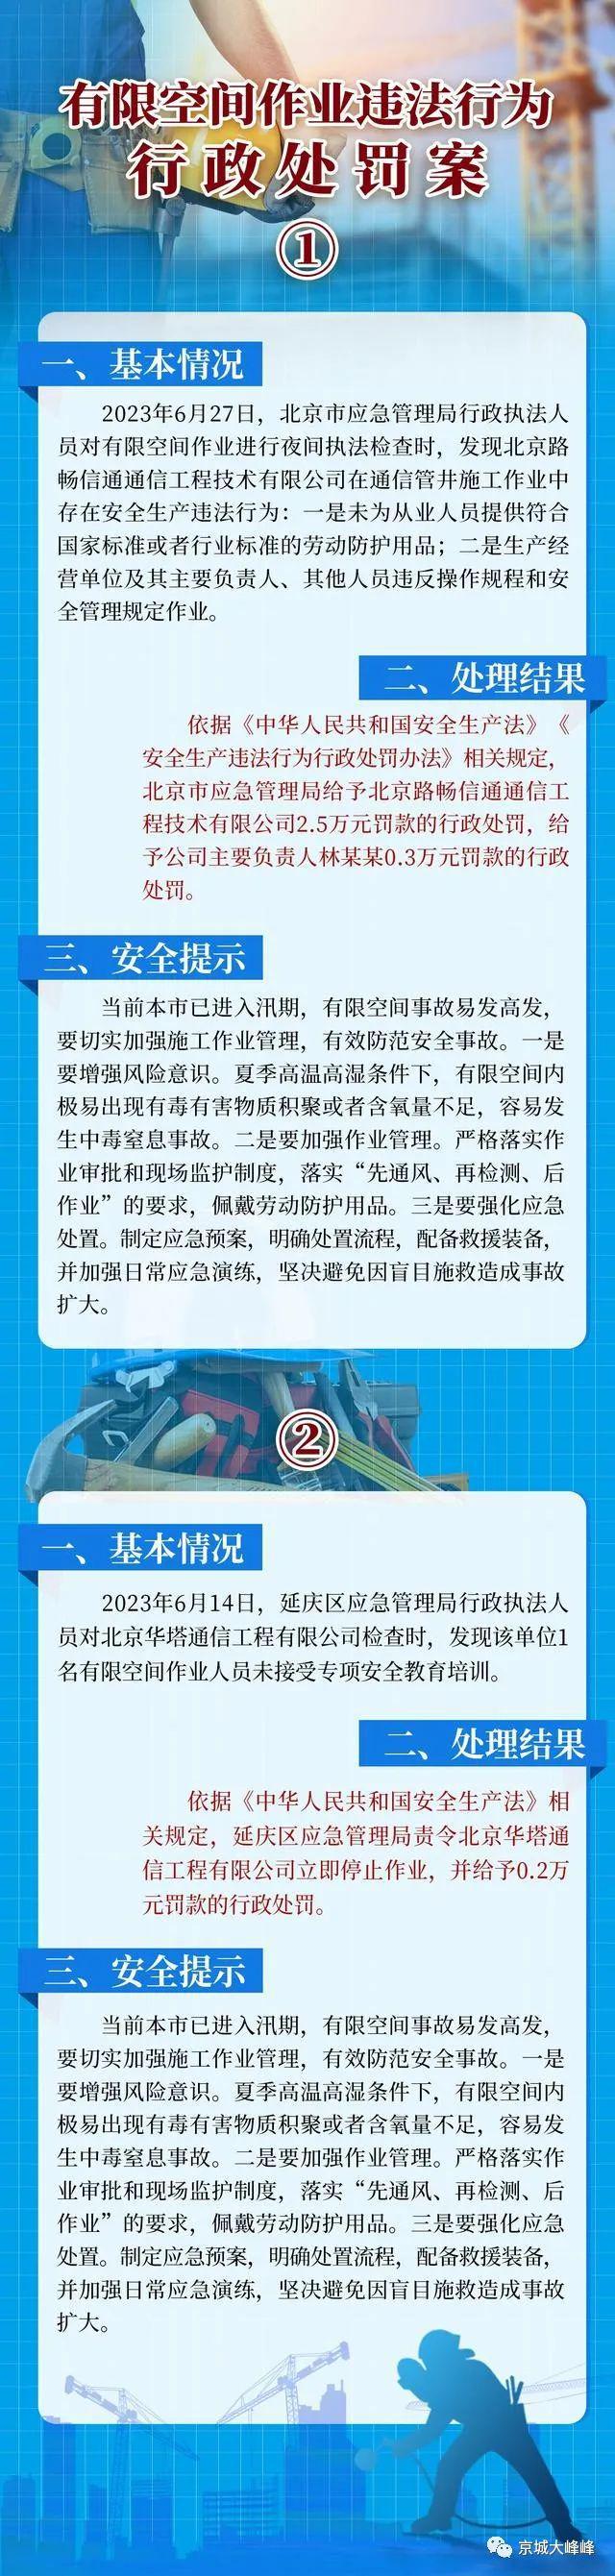 九州酷游北京曝光2起(图1)